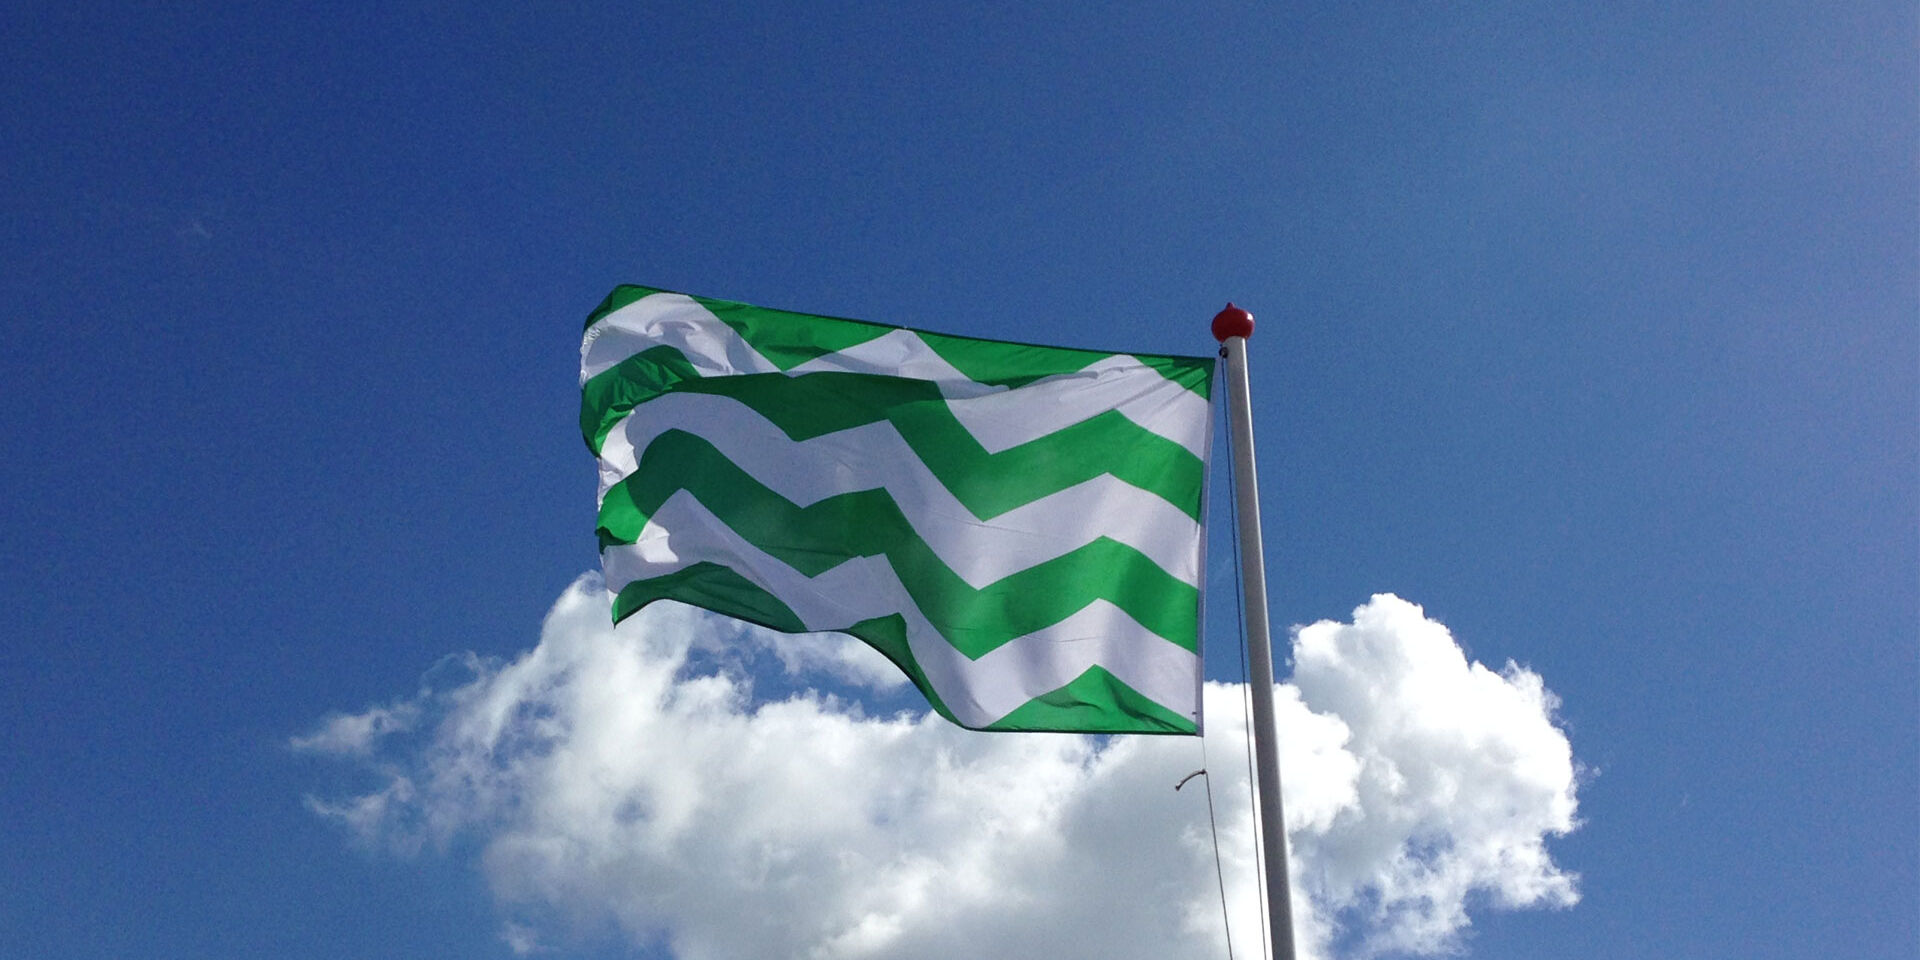 Westlandse vlag met groen witte gekartelde strepen aan vlaggenmast aan de Westlandse kust met blauwe lucht en witte wolken